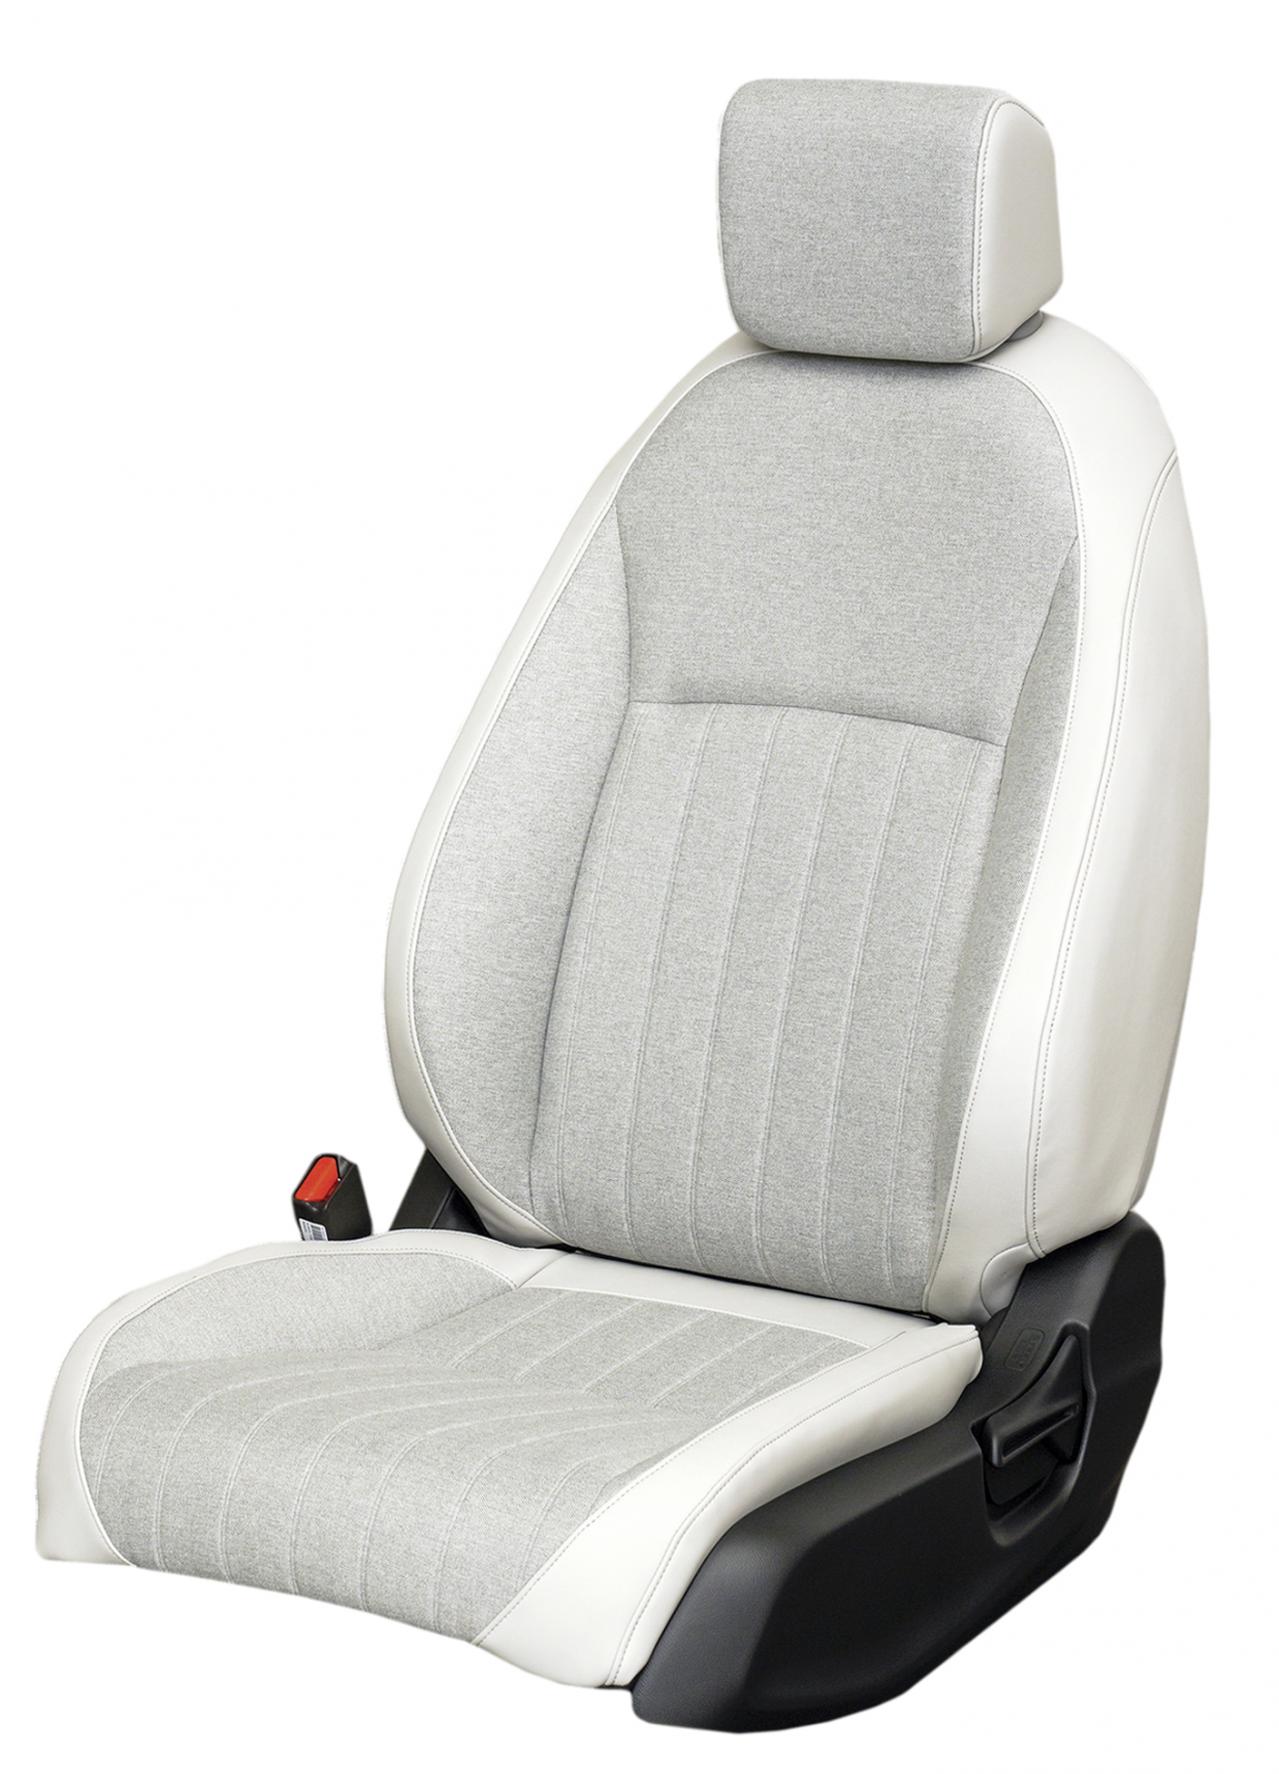 ホンダの新型フィットのシートは テイ エス テック製 軽量で快適な座り心地を実現した ハッチバック Motor Fantech モーターファンテック